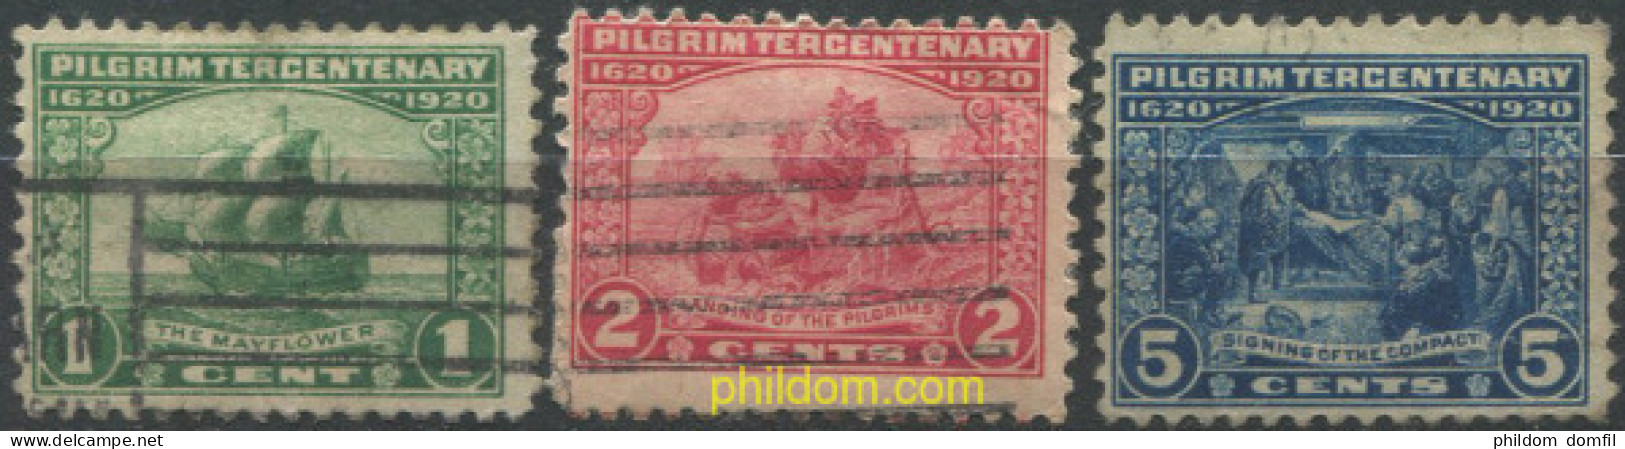 707379 USED ESTADOS UNIDOS 1920 TRICENTENARIO DE LA LLEGADA DE MAYFLOWER EN AMERICA - Unused Stamps